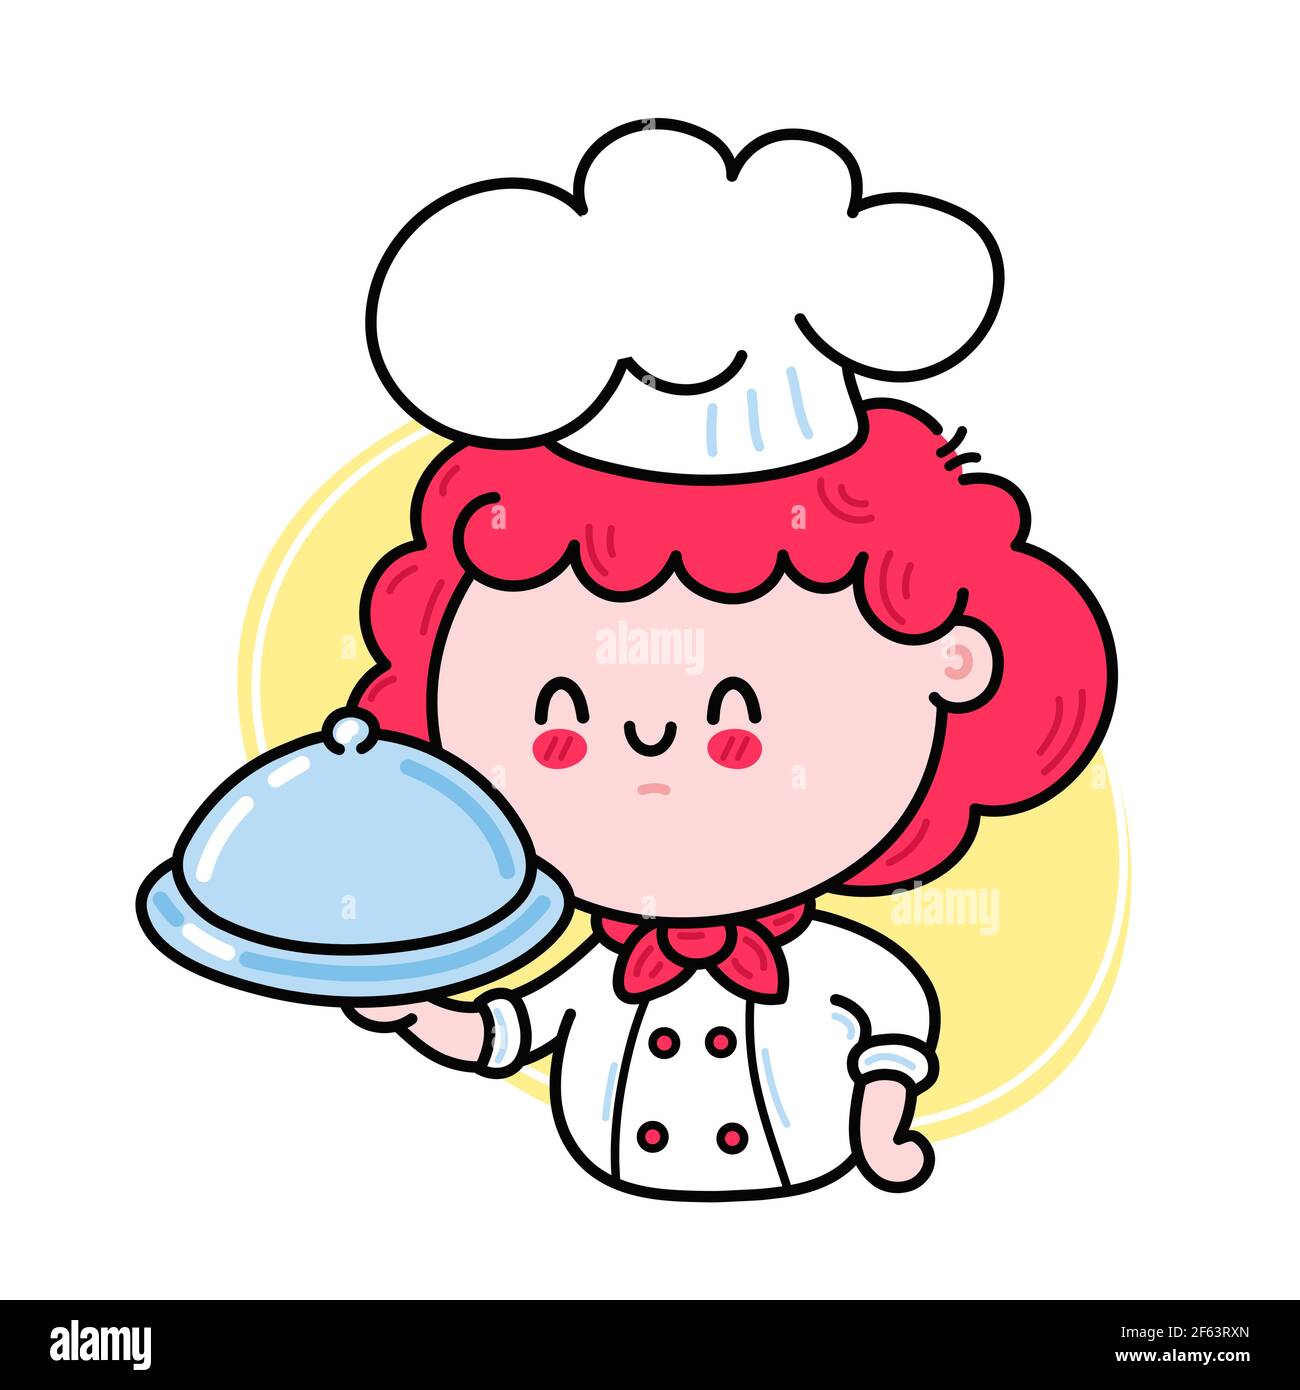 Nette lustige Koch kochen Mädchen Charakter serviert ein Gericht. Vektor Hand gezeichnet Cartoon kawaii Charakter Illustration Symbol. Isoliert auf weißem Hintergrund. Nette kawaii Frau Dame kochen Charakter Logo Konzept Stock Vektor